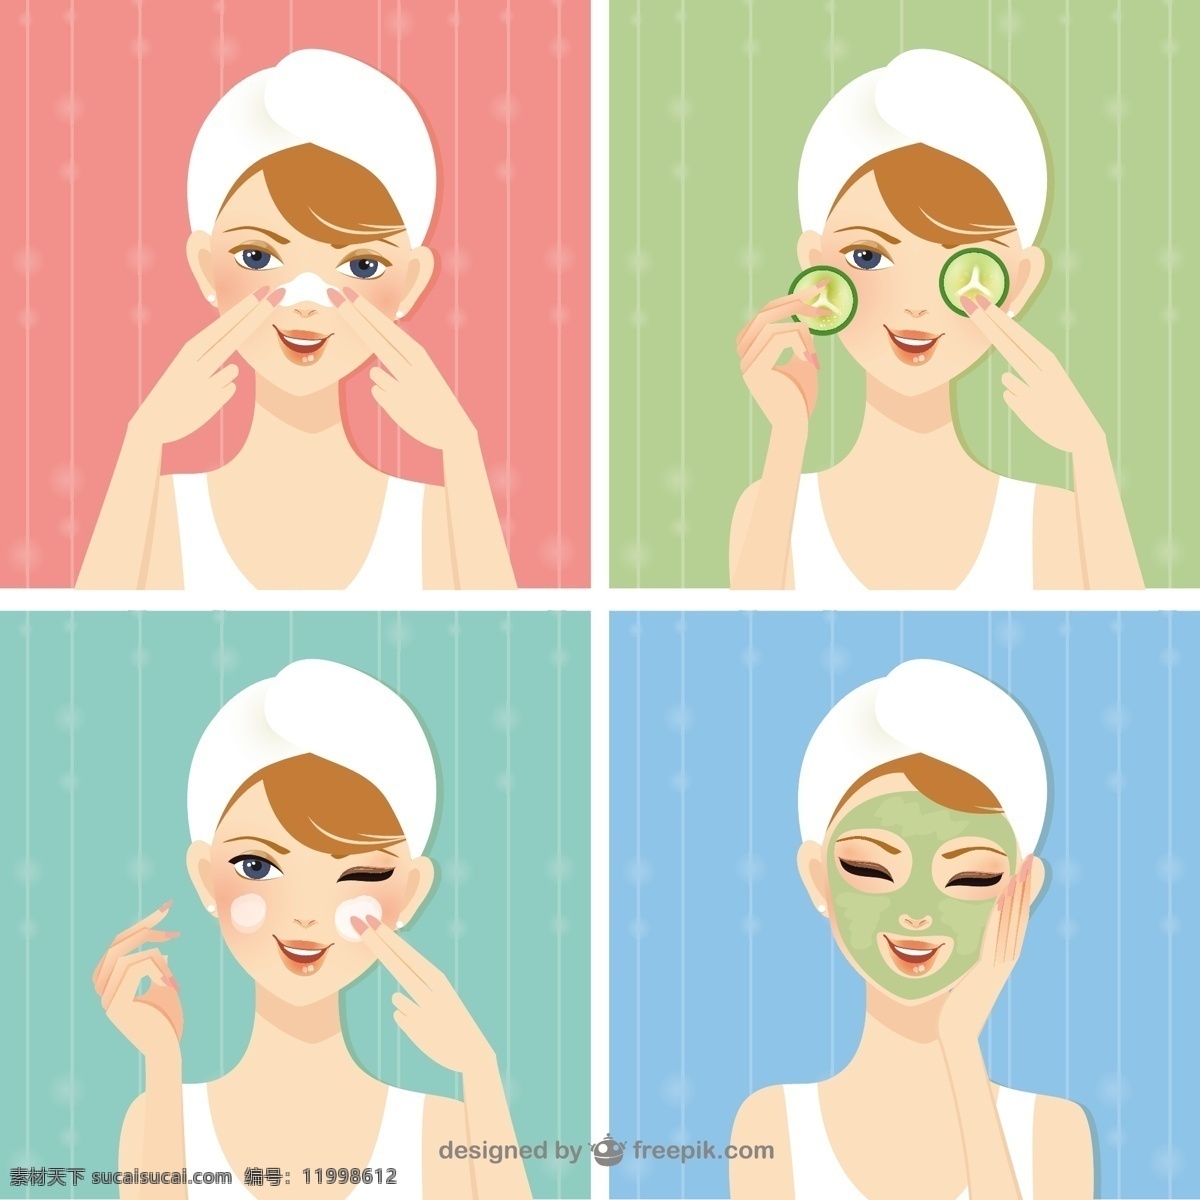 美容护理 美容 水疗 面膜 美容院 护理 面霜 女性 健康 女性面部 治疗